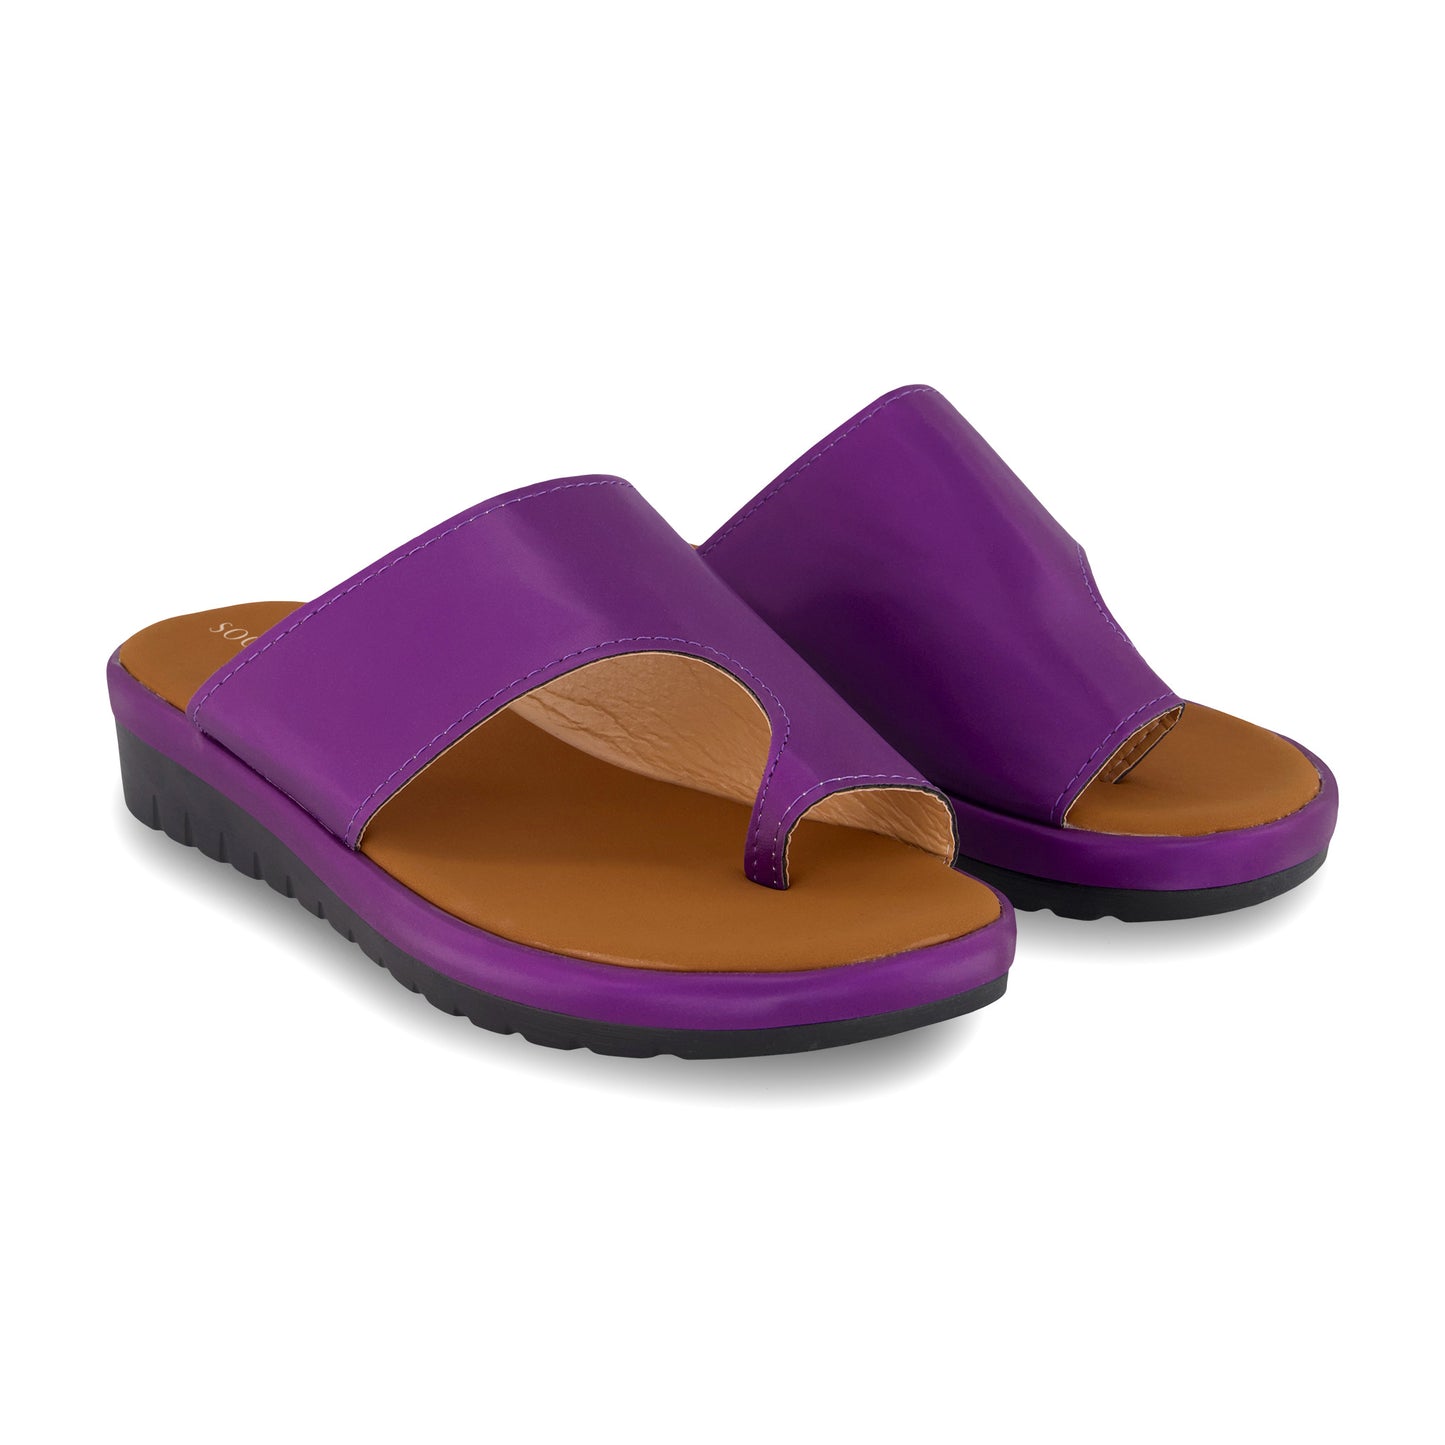 Comfy Platform Wide Sandals